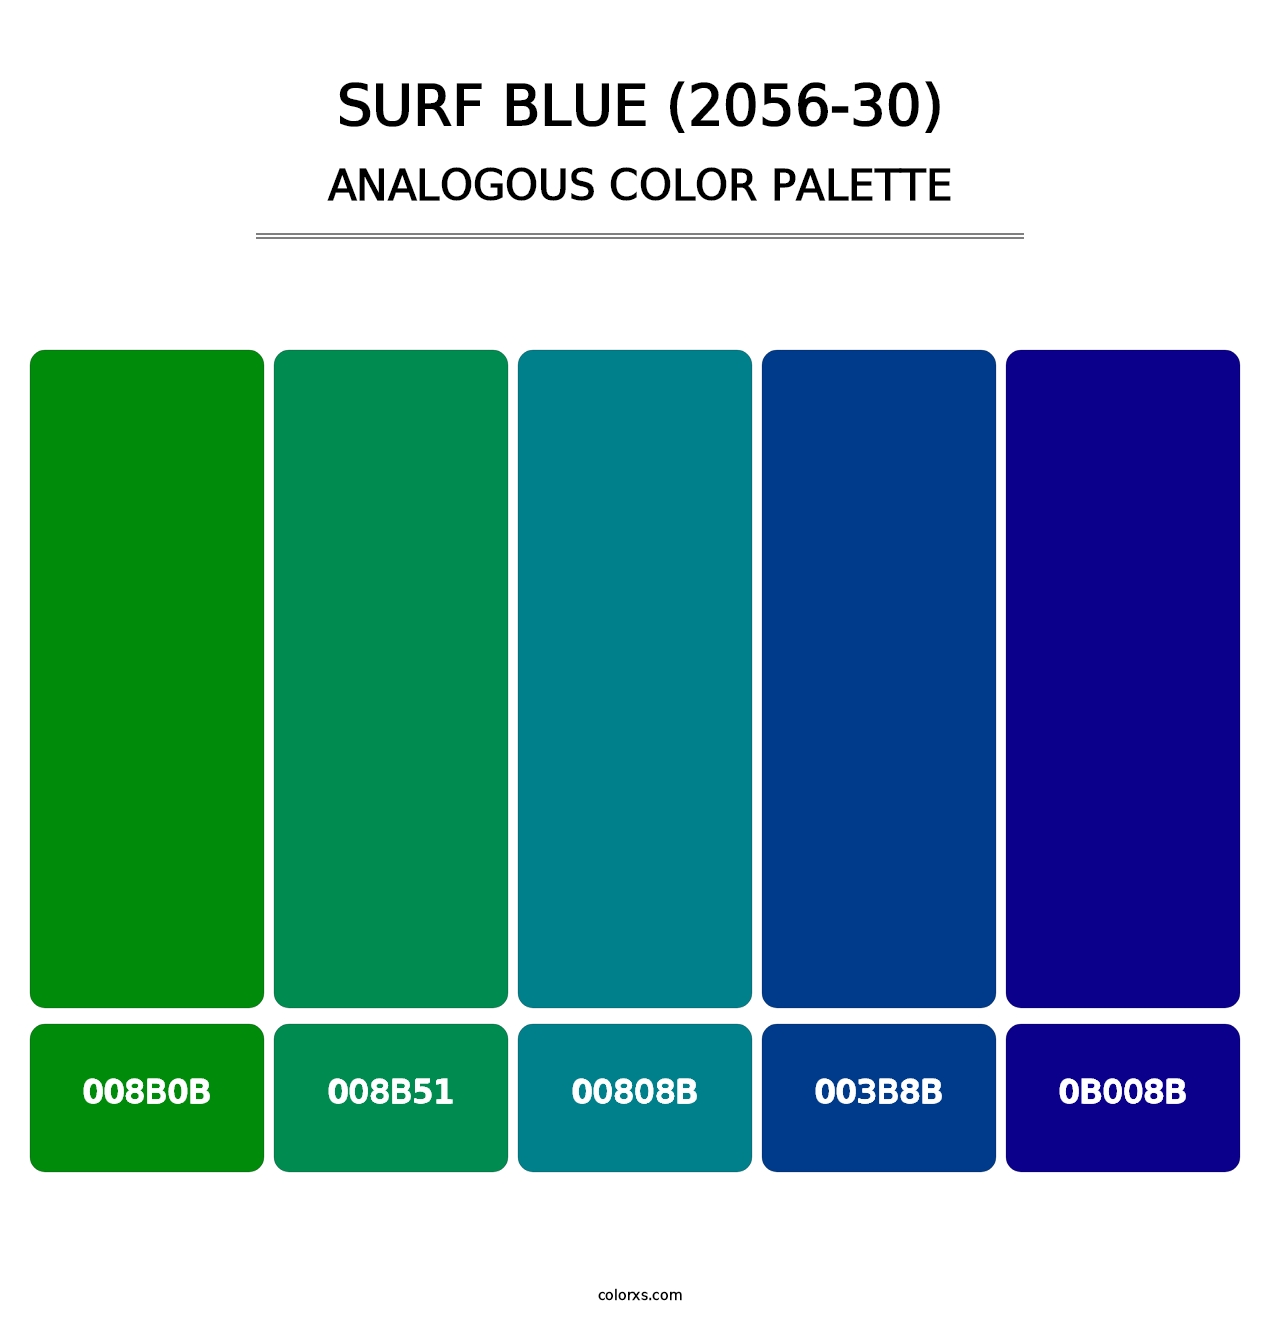 Surf Blue (2056-30) - Analogous Color Palette